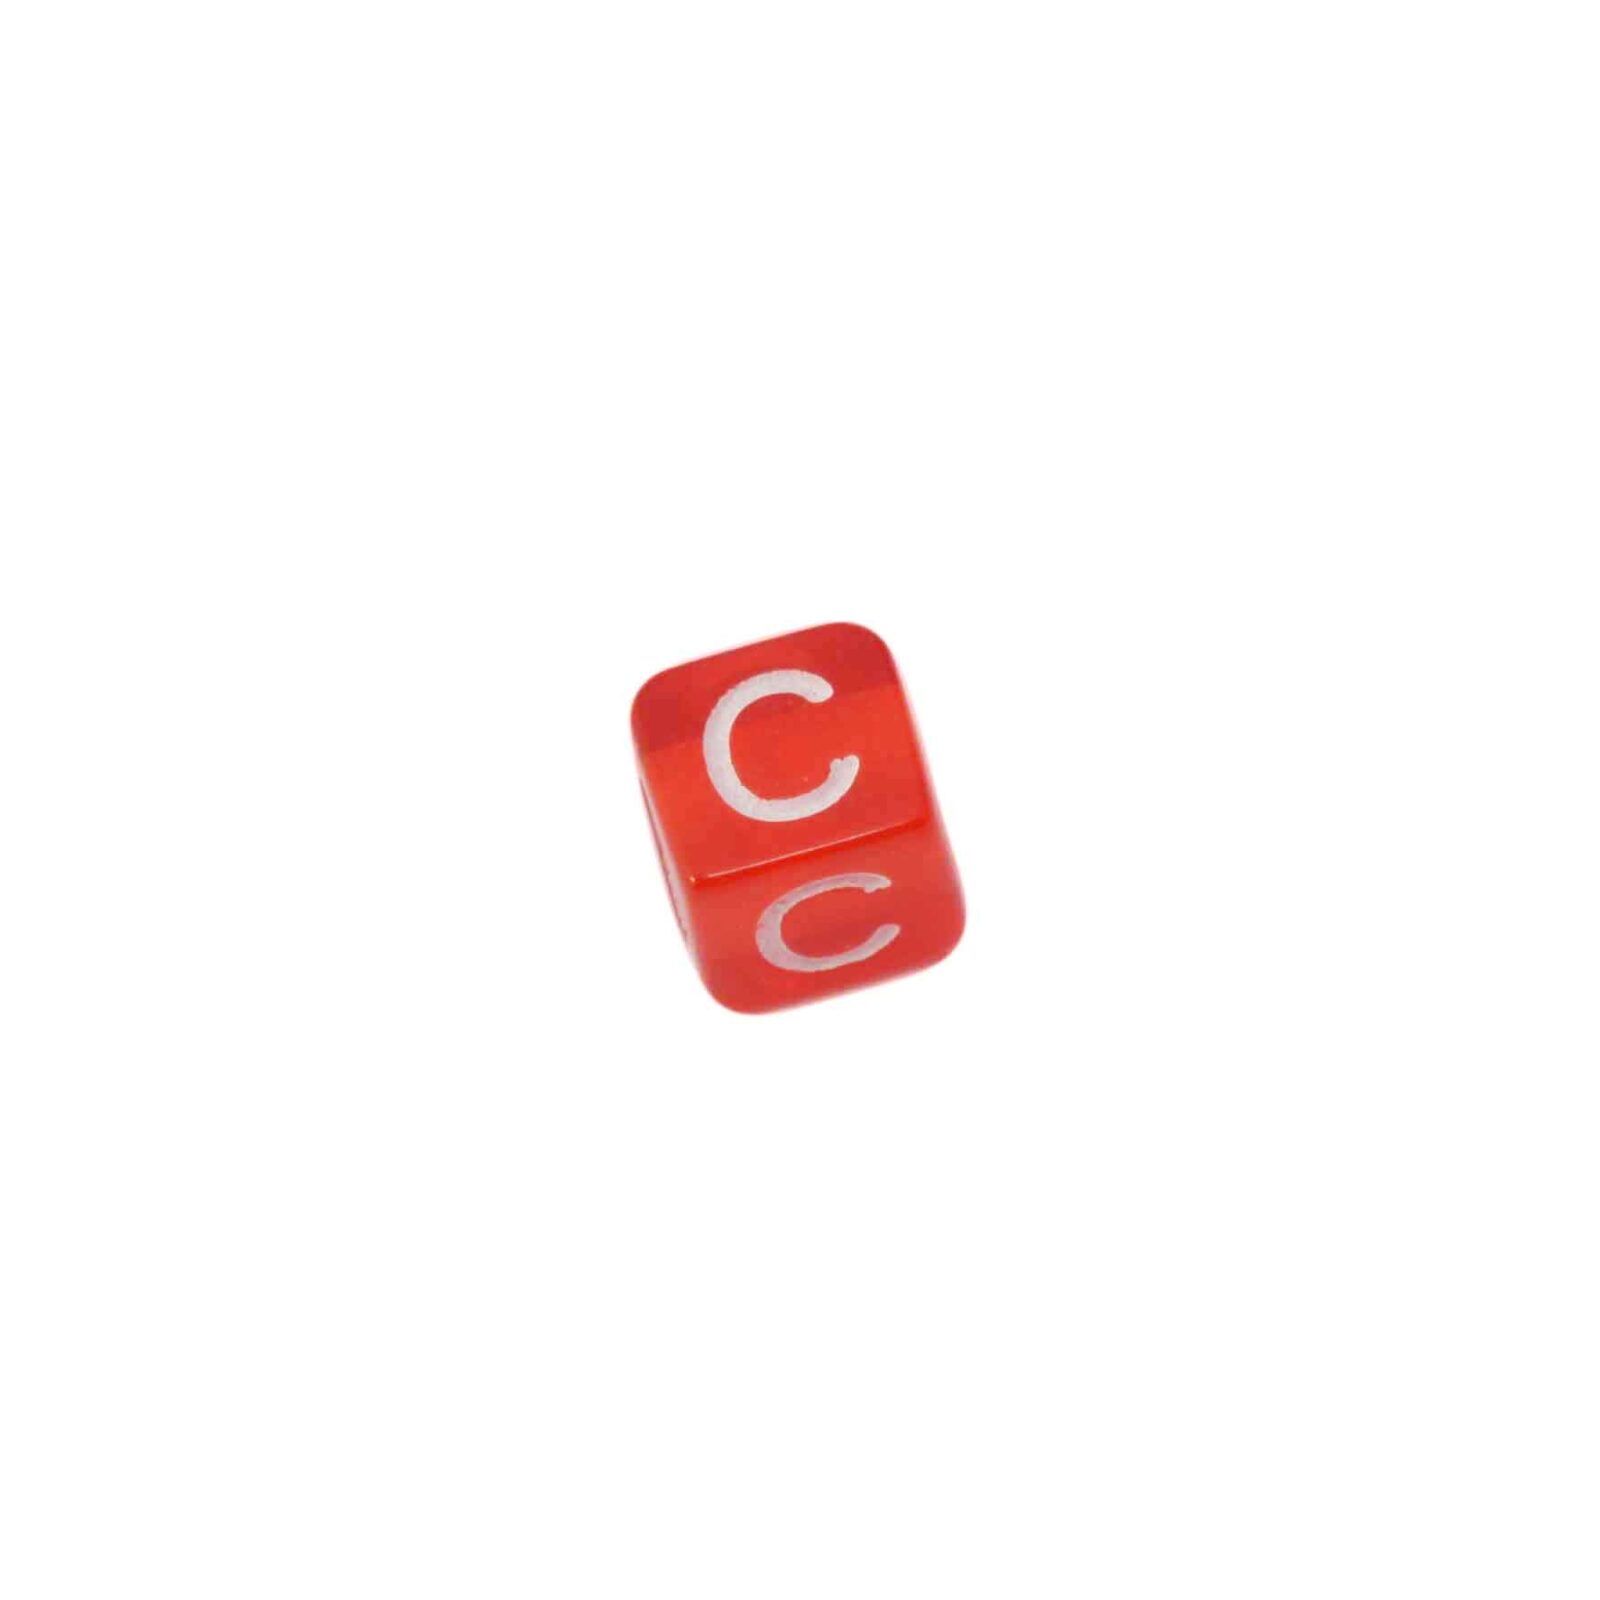 Rode letterkraal C